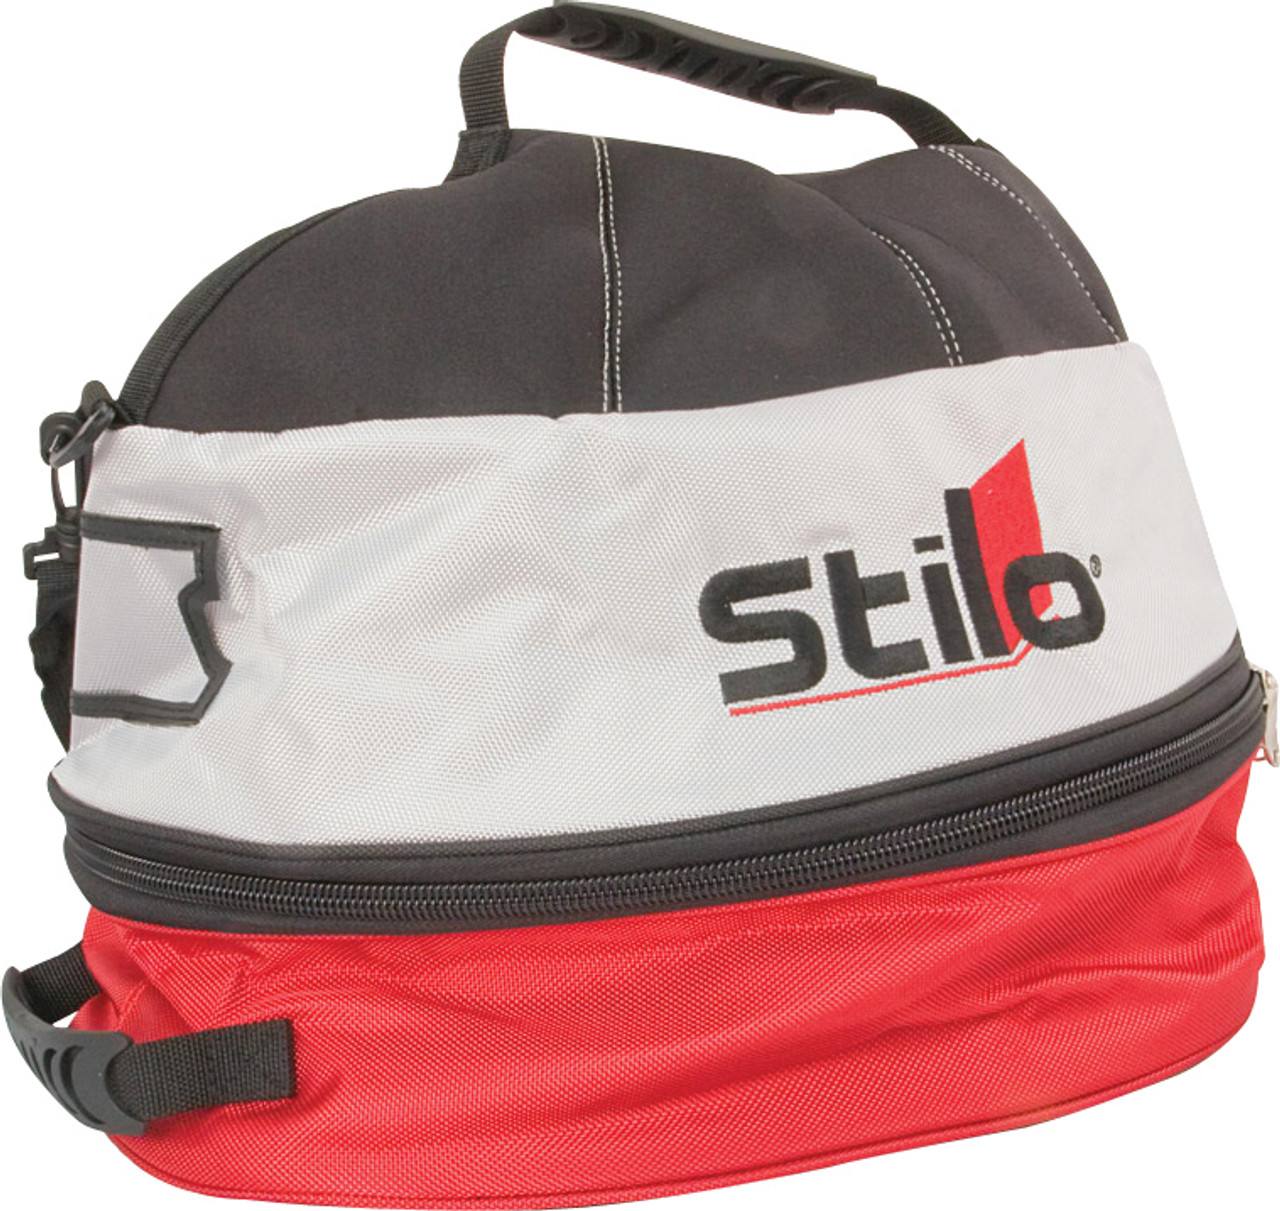 Stilo Helmet Bag Stilo  - STIYY0016